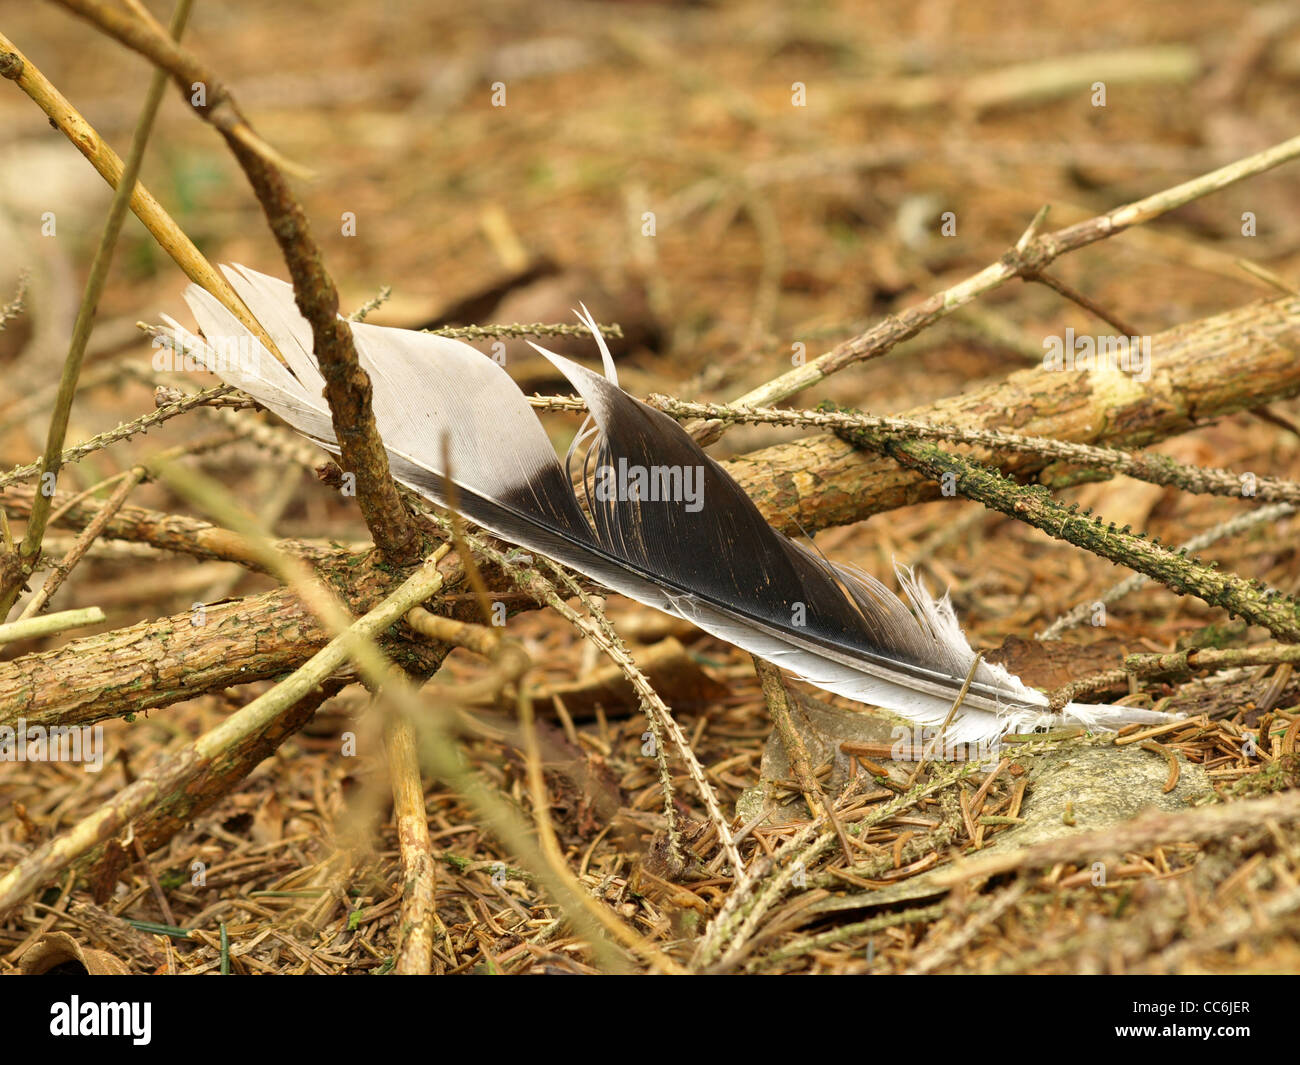 feather on the woodground / Feder auf Waldboden Stock Photo